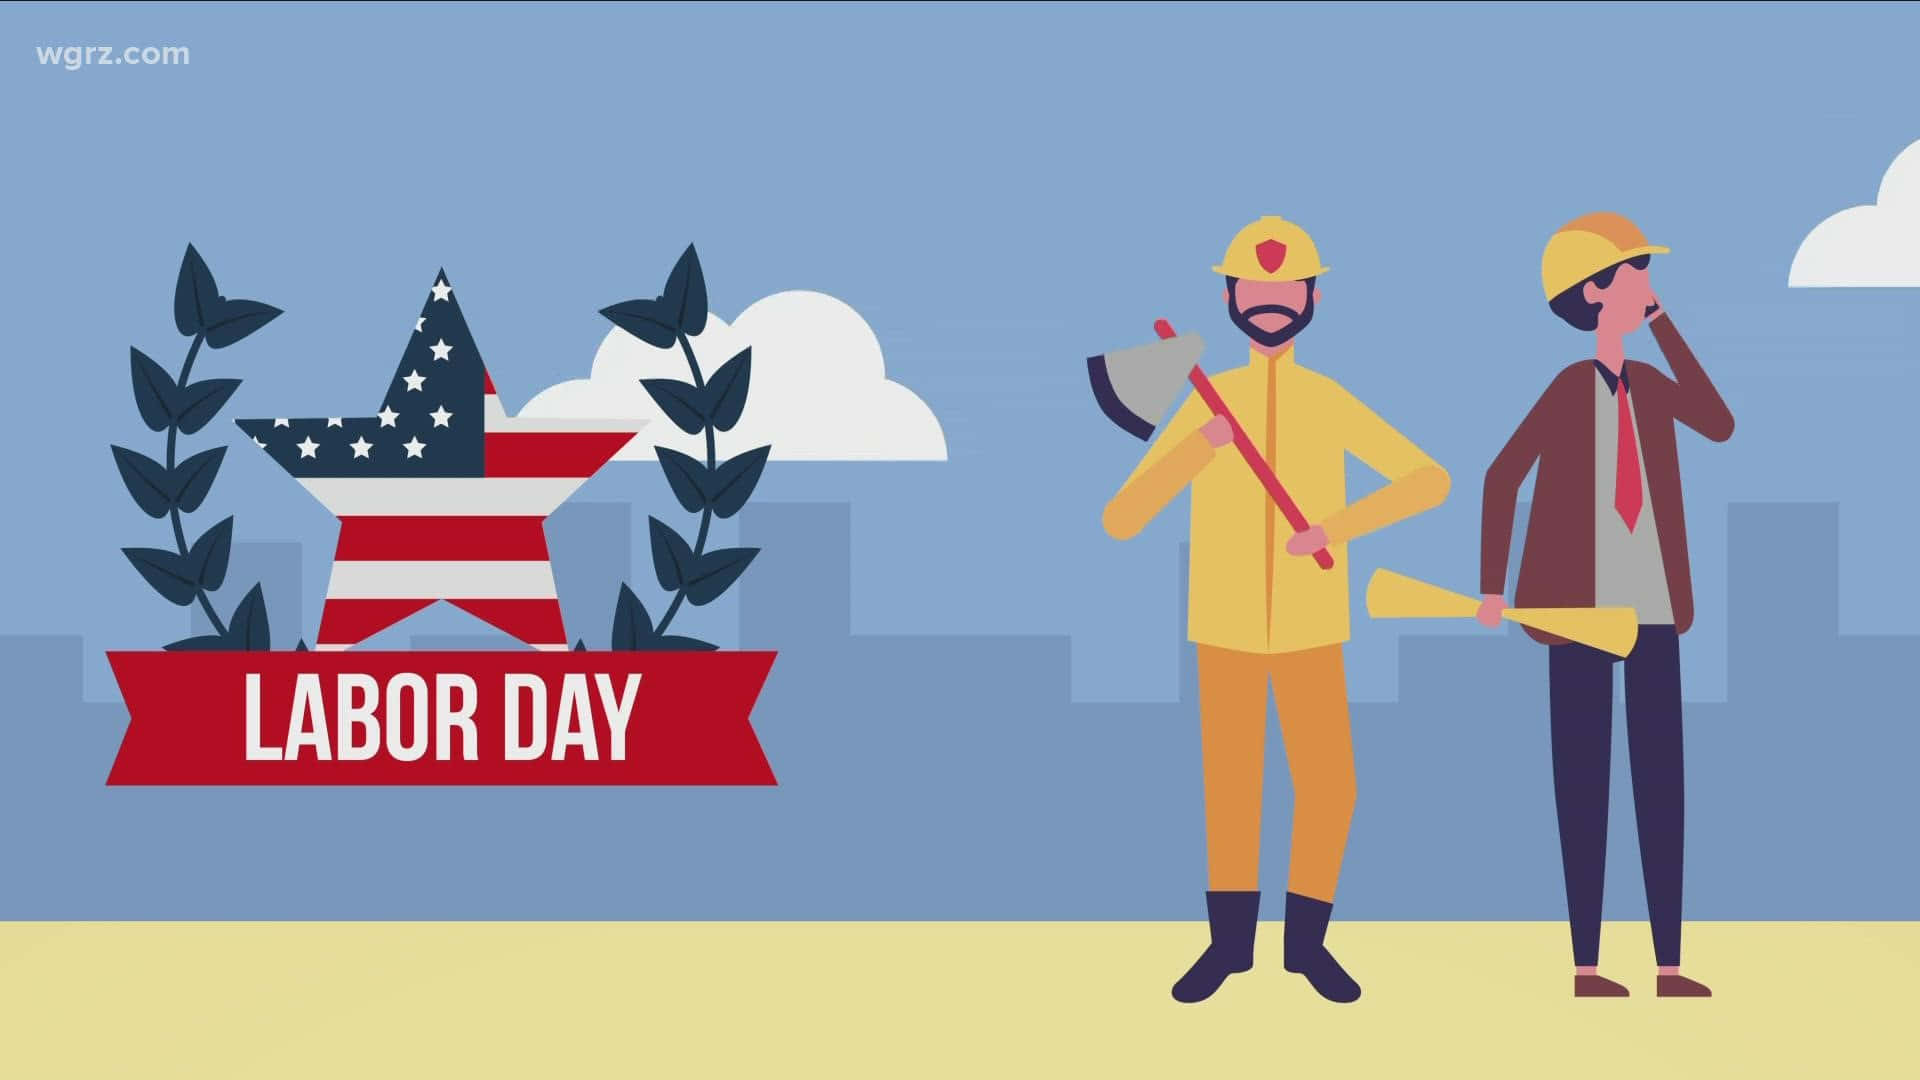 Feiernsie Den Tag Der Arbeit Und Würdigen Sie Die Beiträge Der Us-amerikanischen Arbeitnehmer!